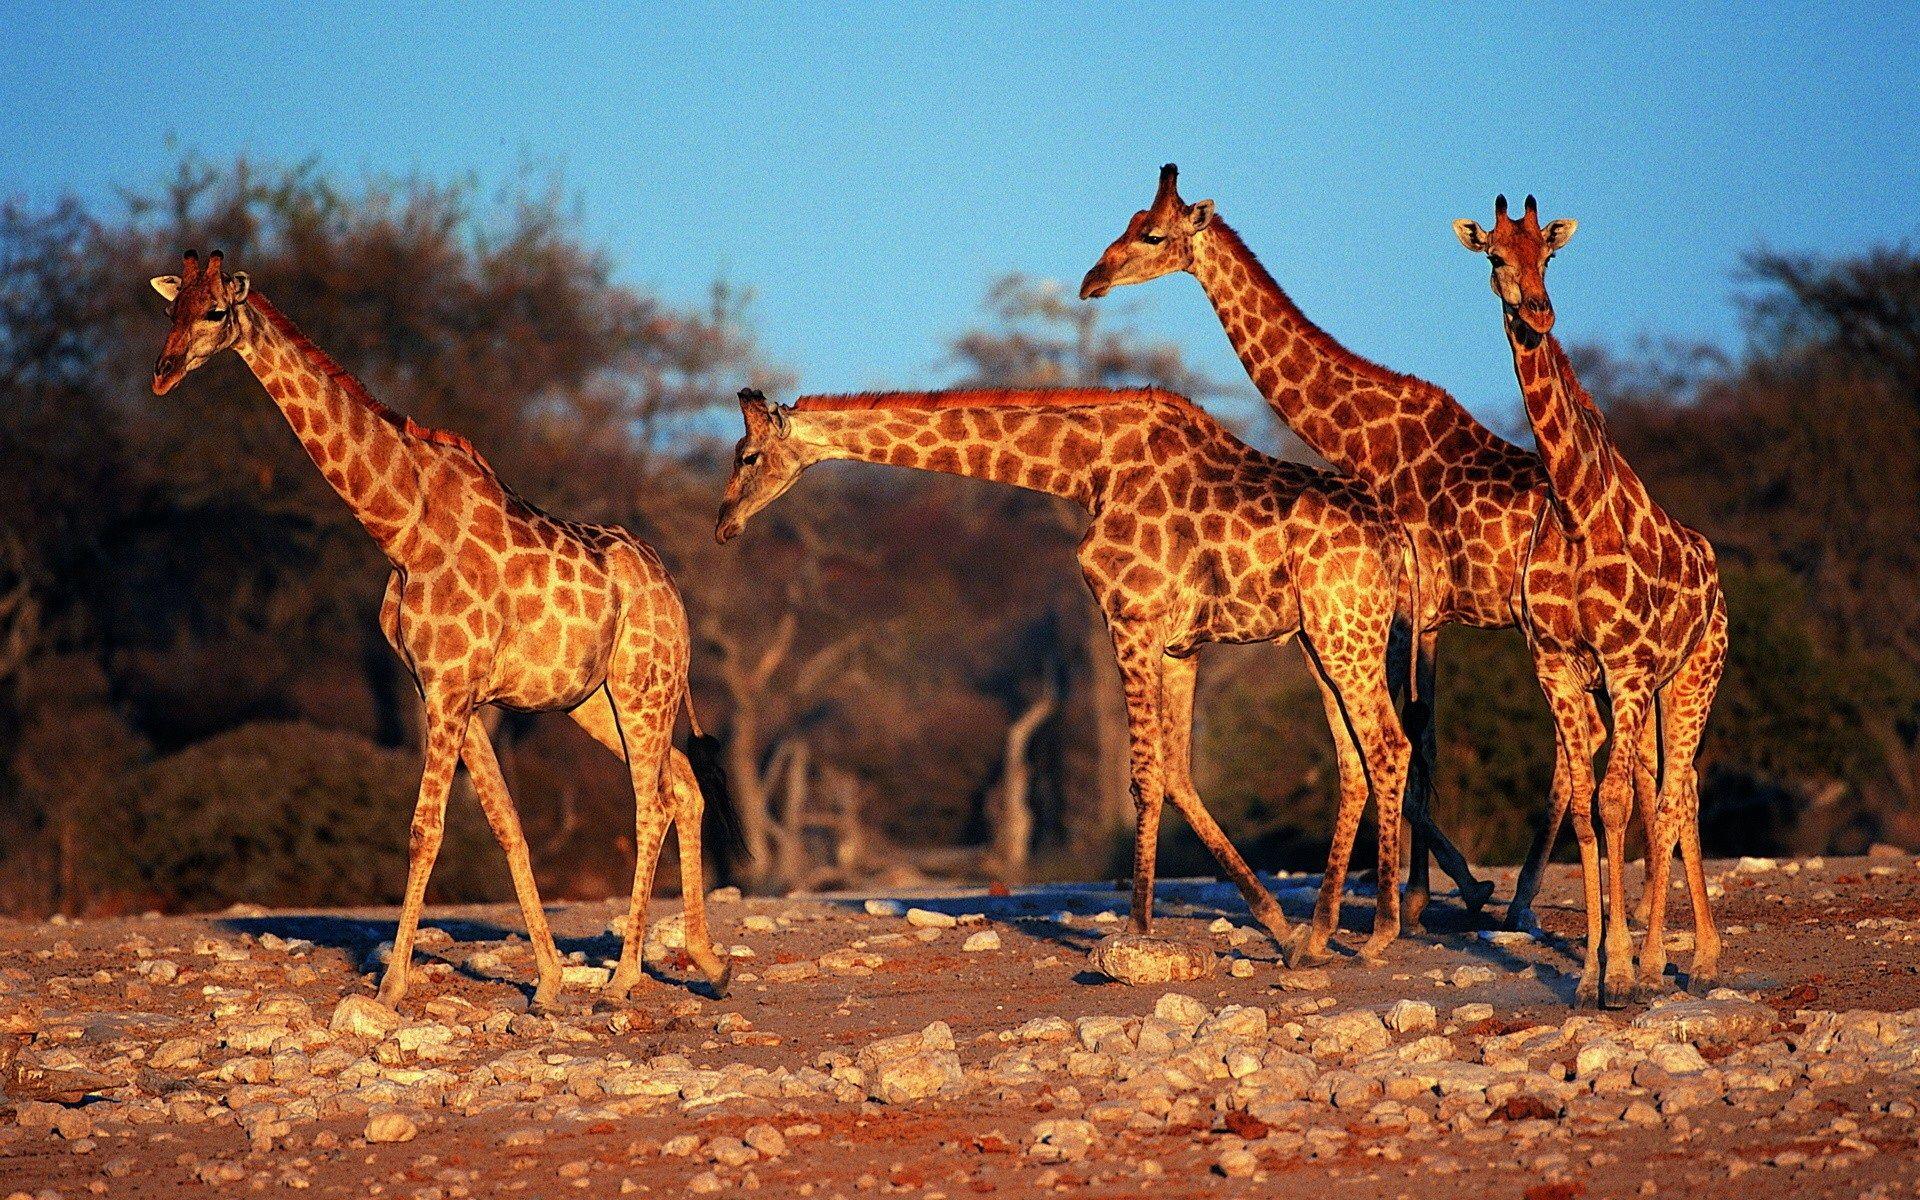 Giraffes wallpaper. Giraffes